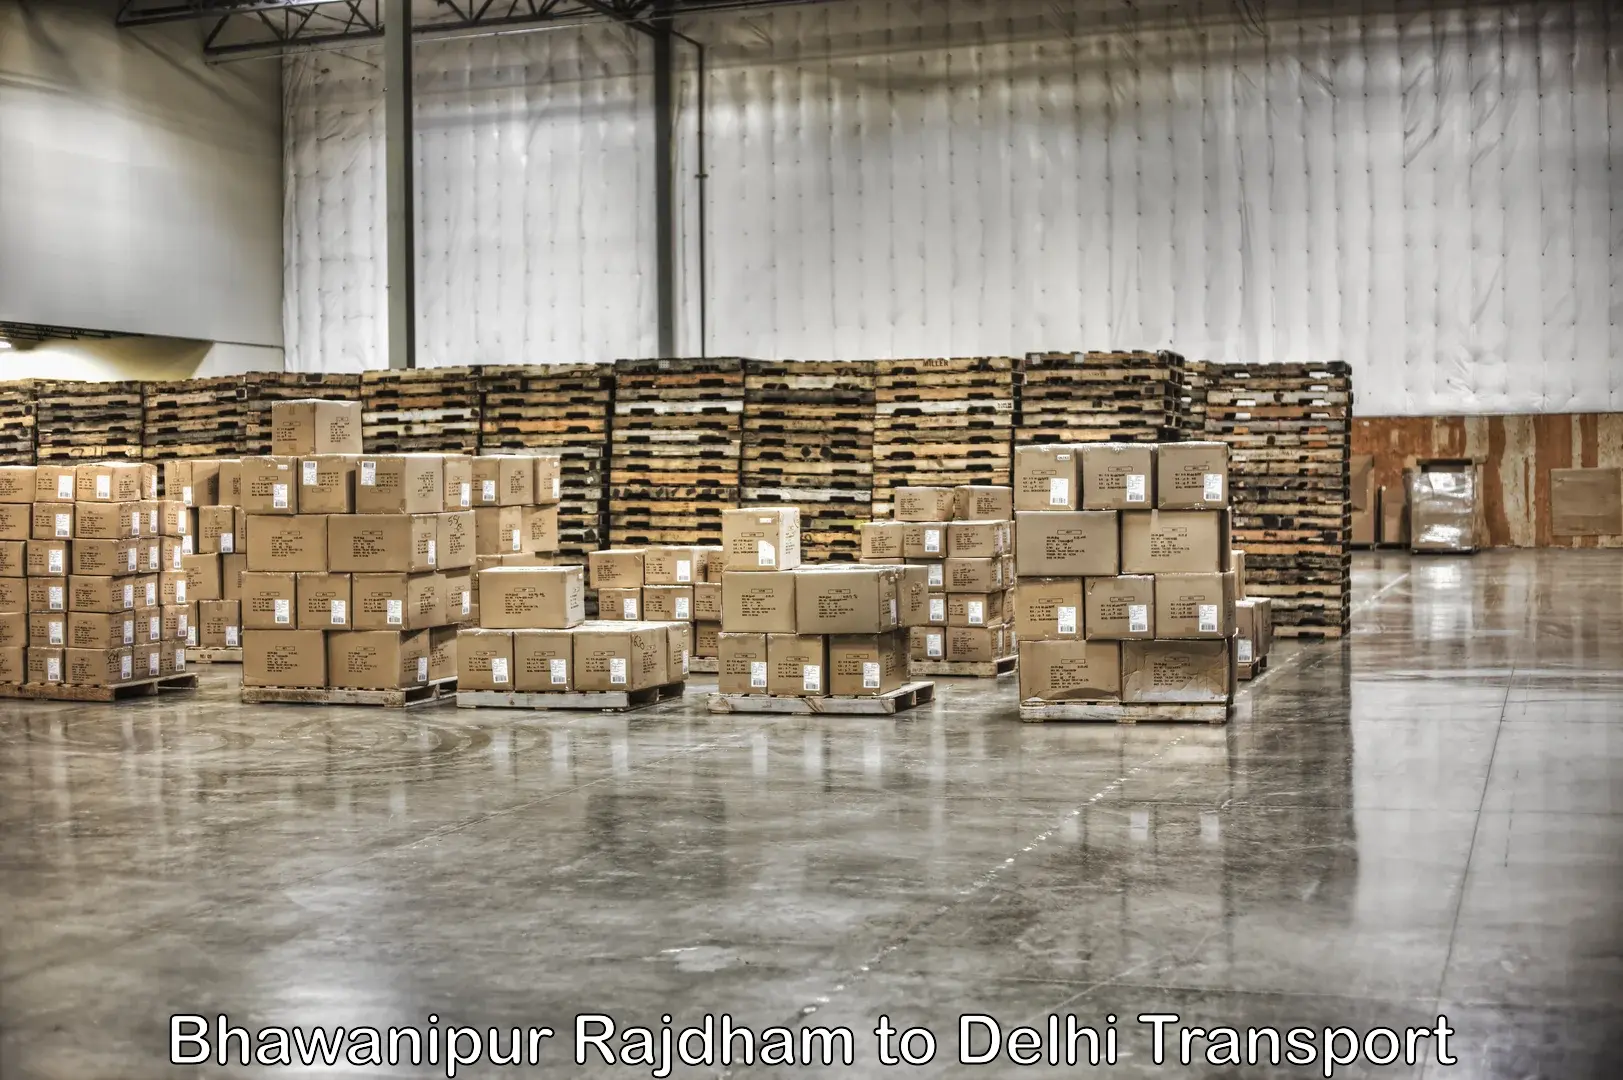 Furniture transport service Bhawanipur Rajdham to NCR